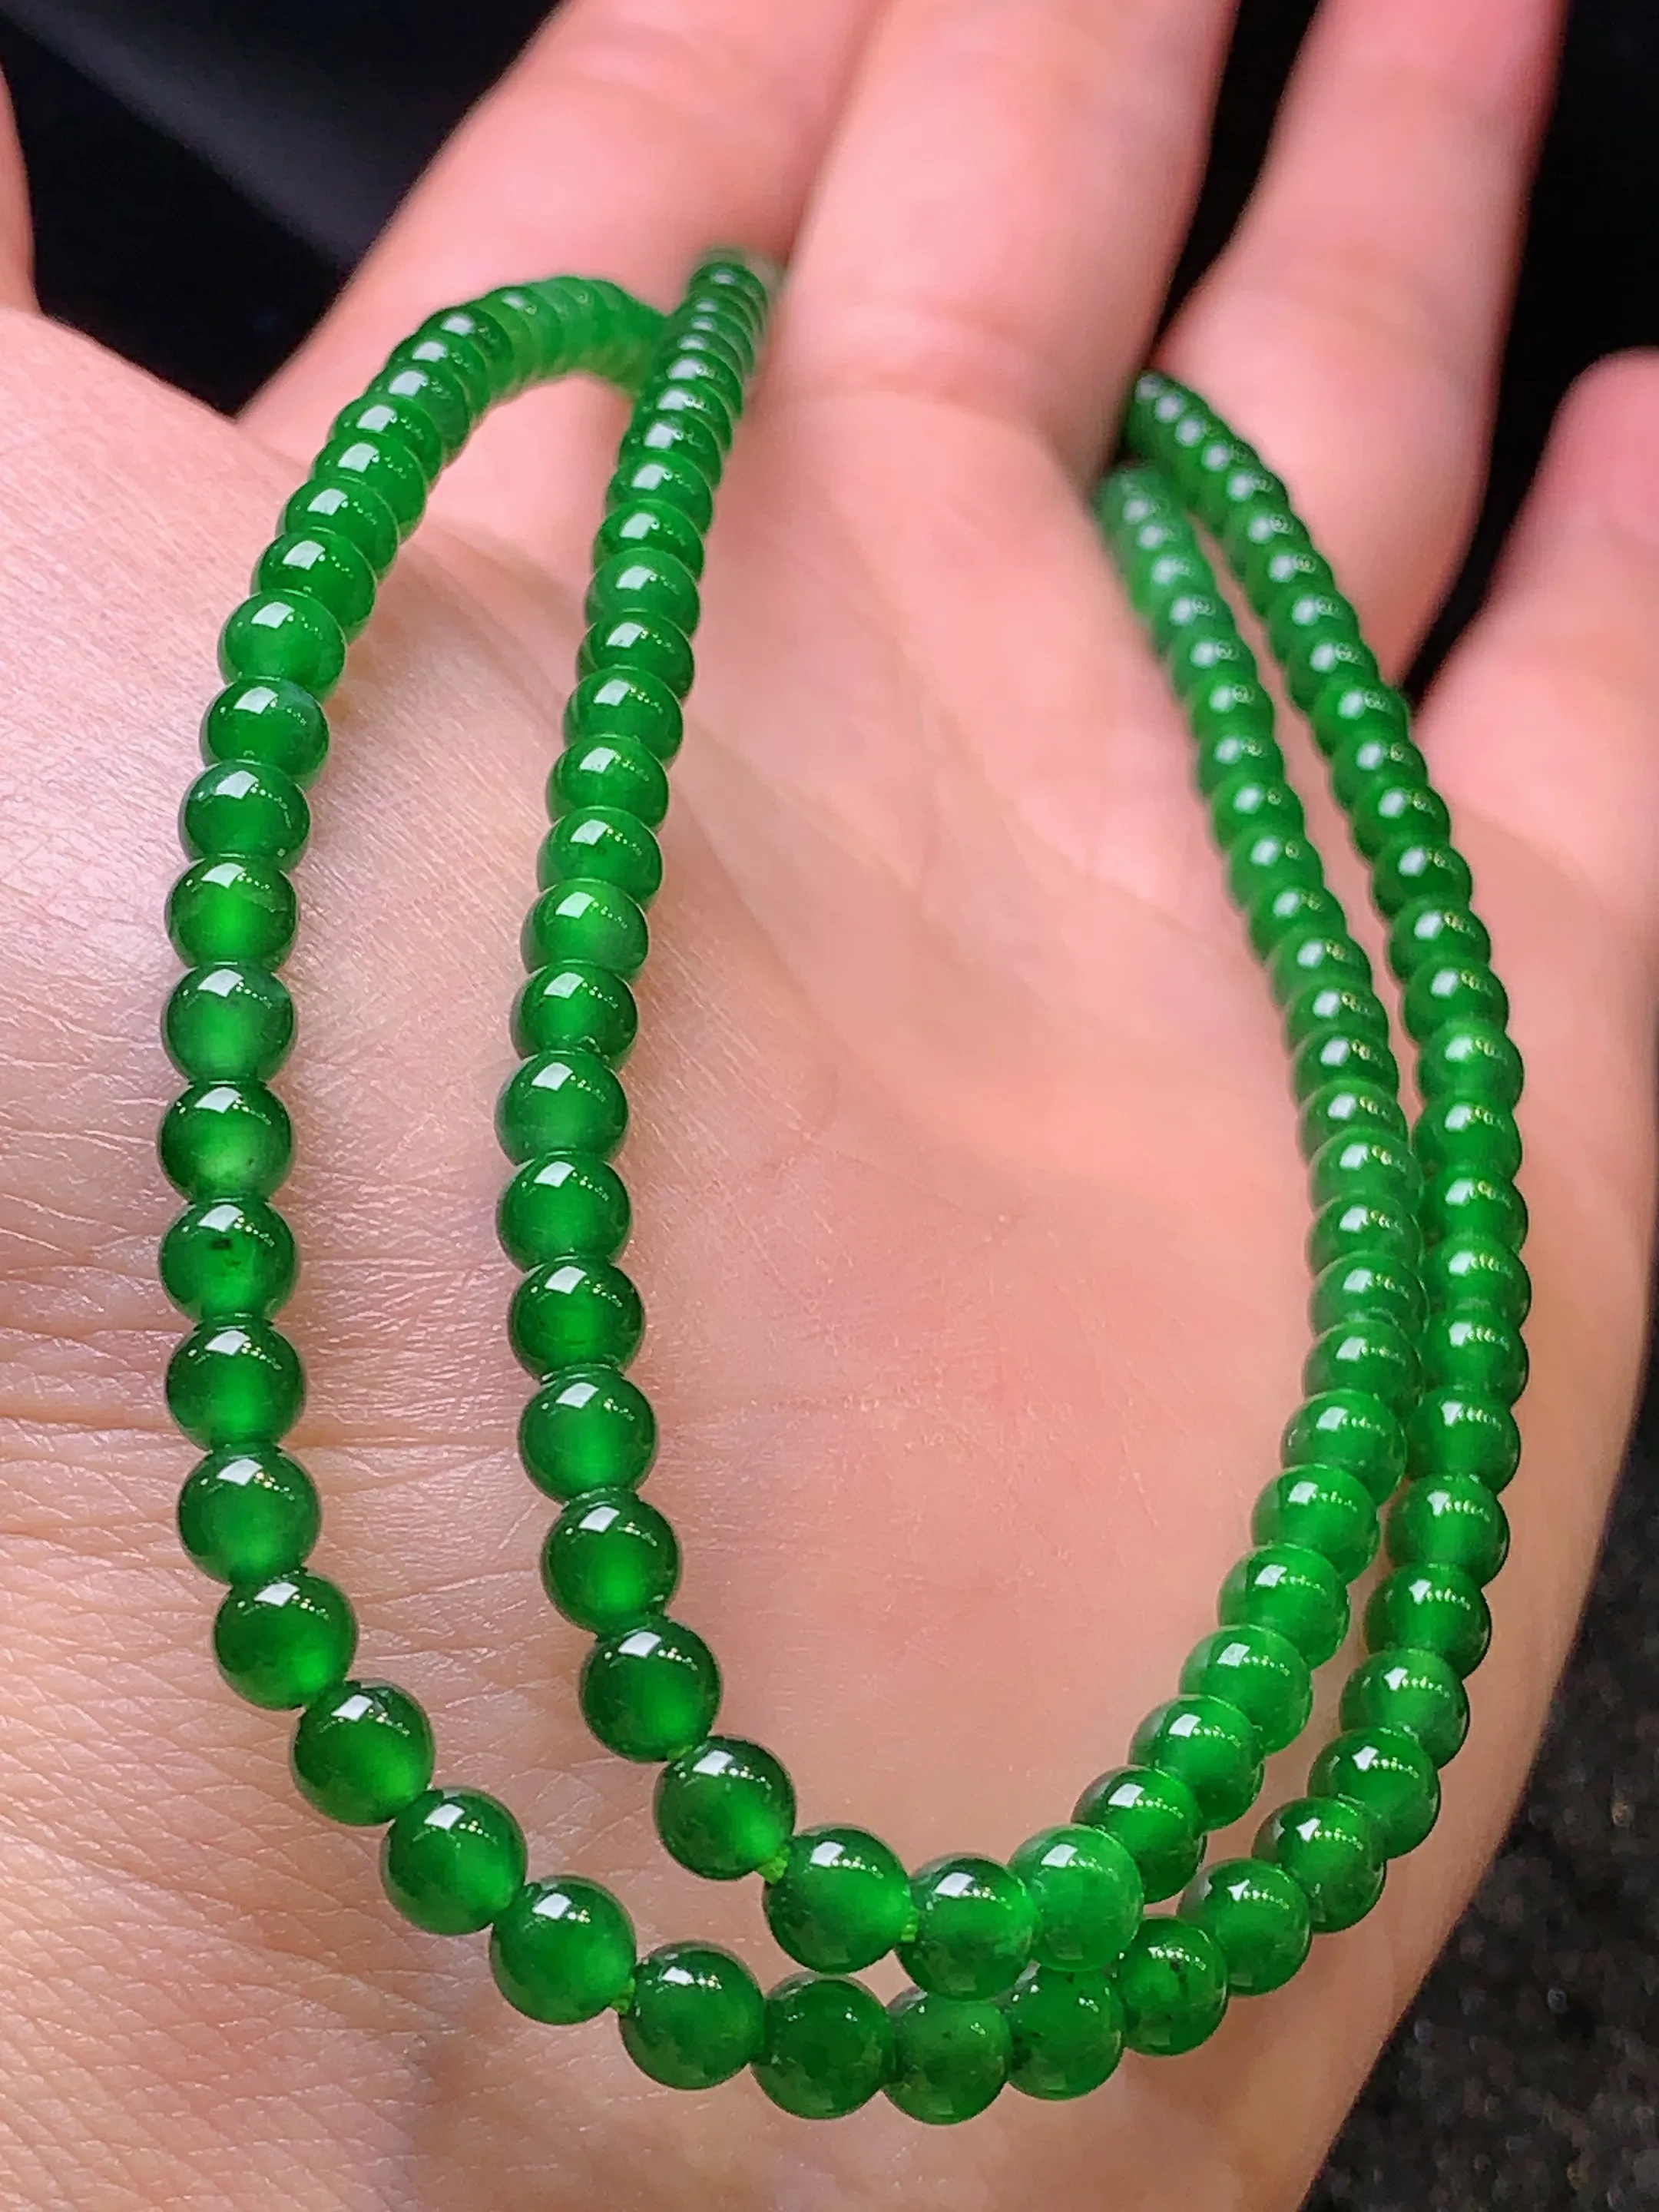 满绿圆珠项链 玉质细腻   色泽艳丽 圆润饱满 款式新颖时尚精美 取一尺寸4.2